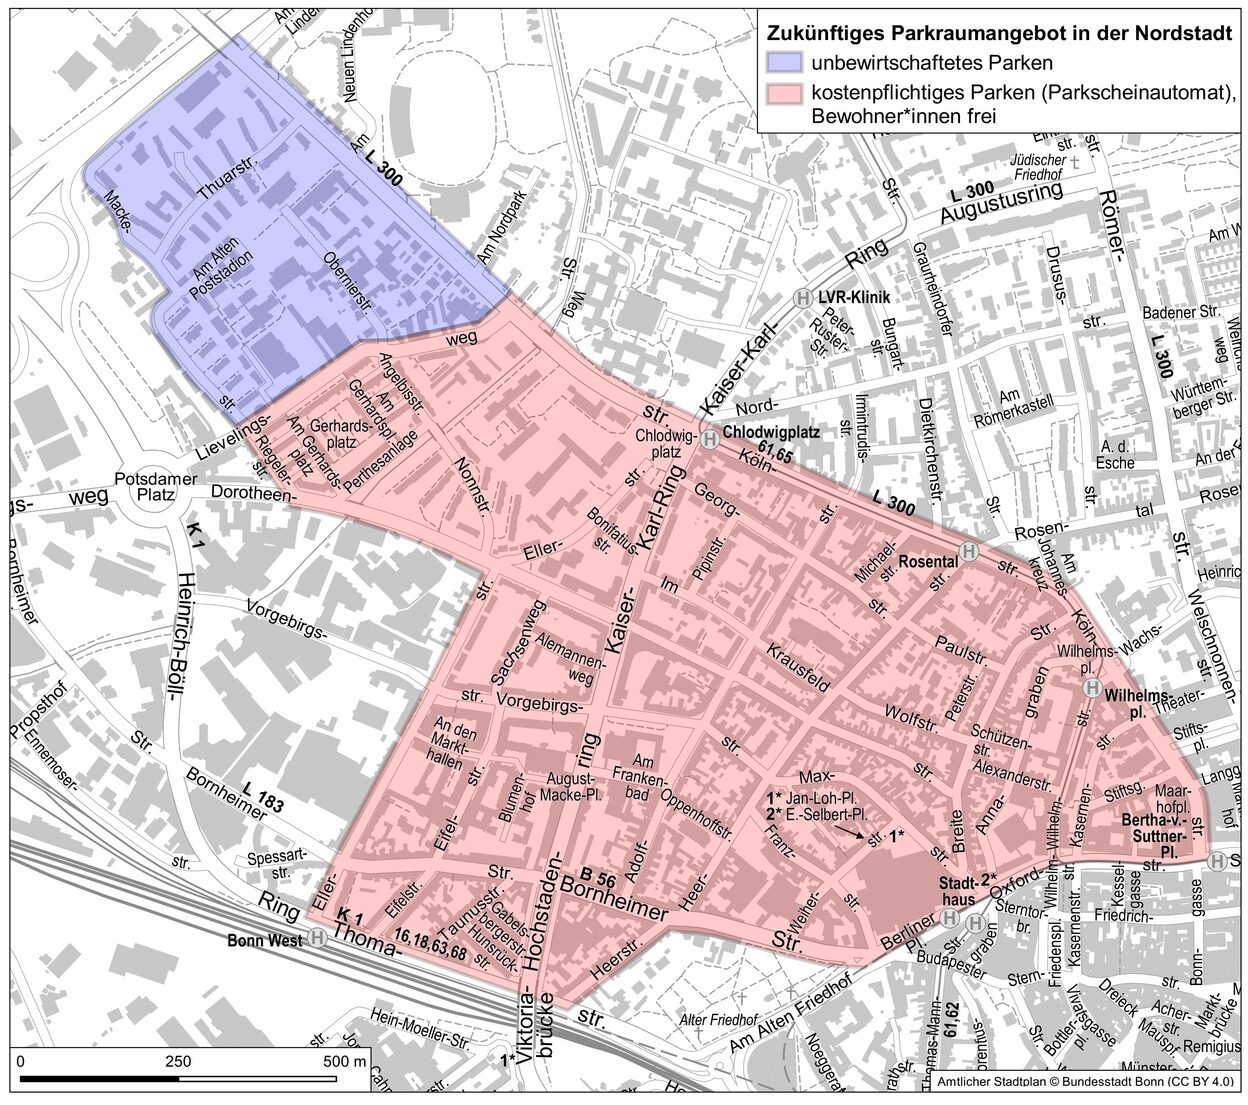 Die Karte zeigt das künftige Parkraumangebot in der Nordstadt.